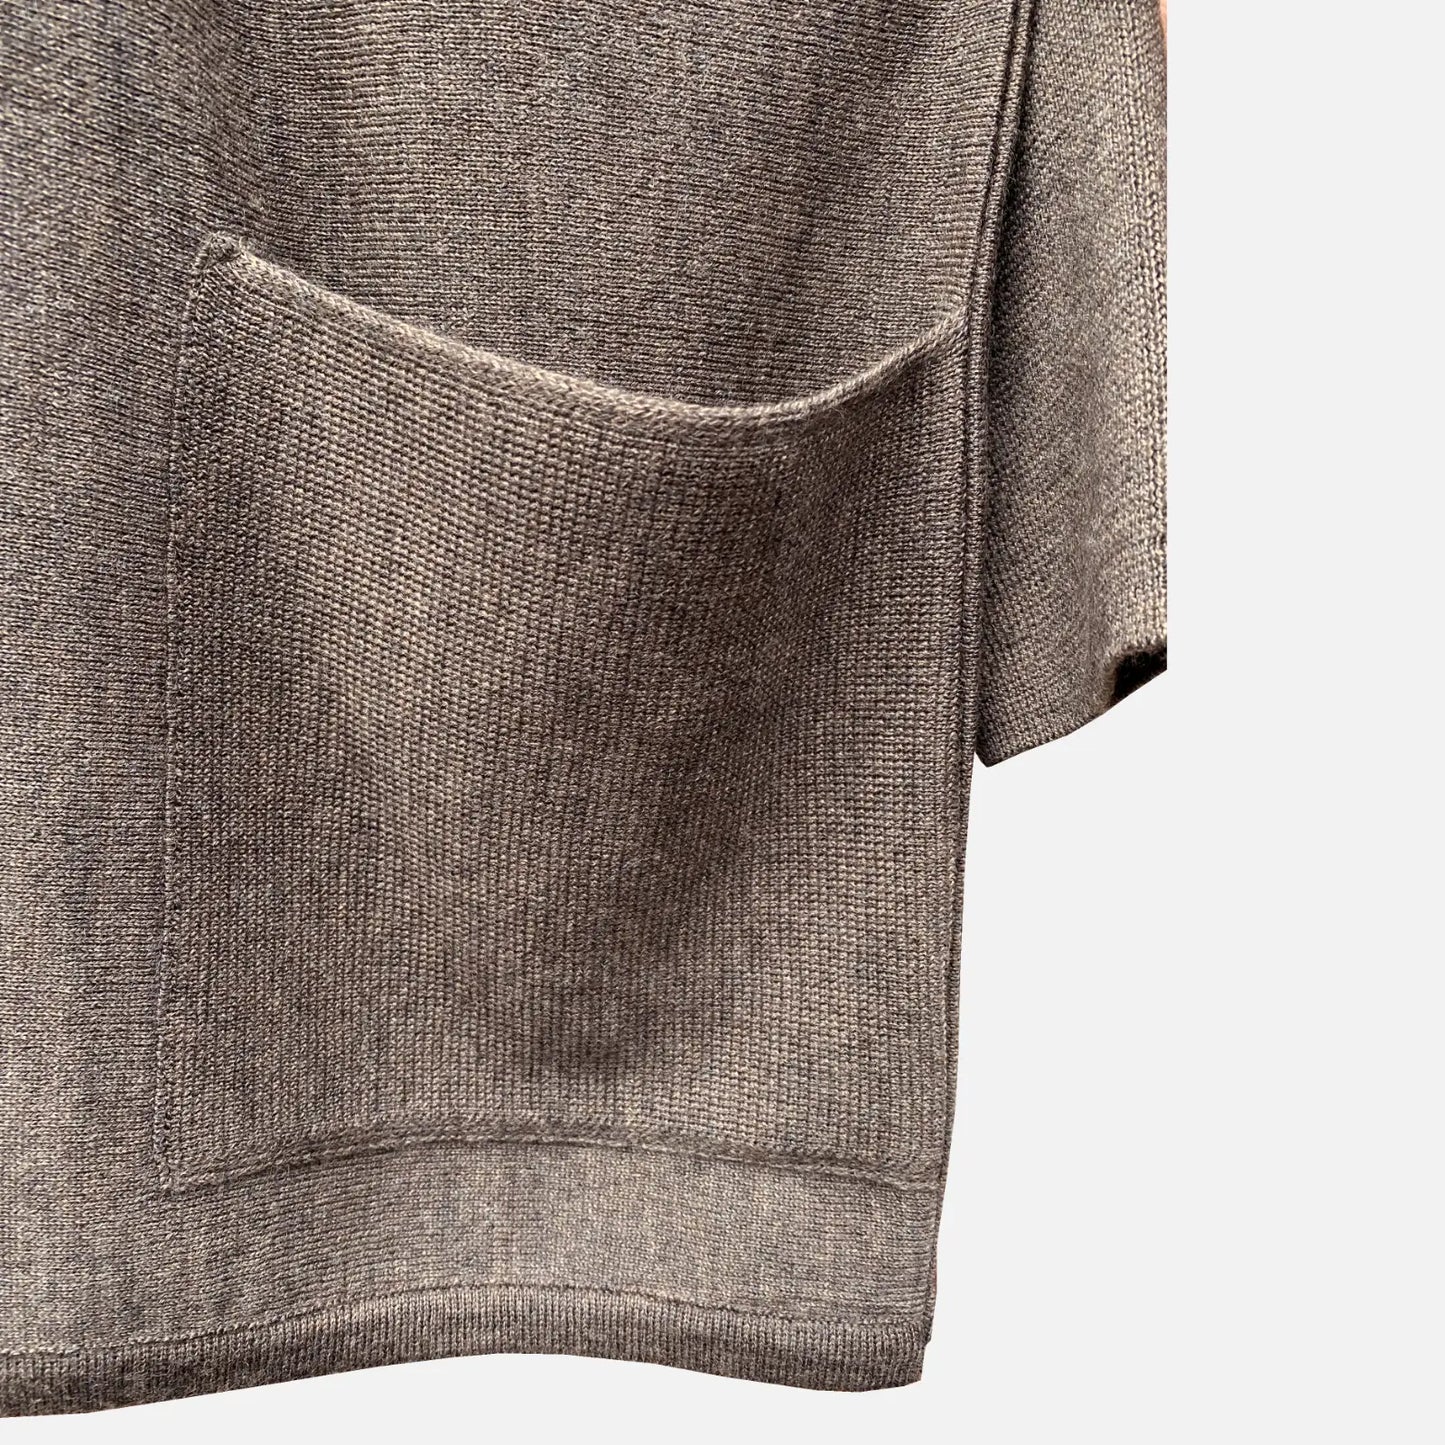 Agnete Merino Sweater fra Muse Wear i gråbrun (detalje)